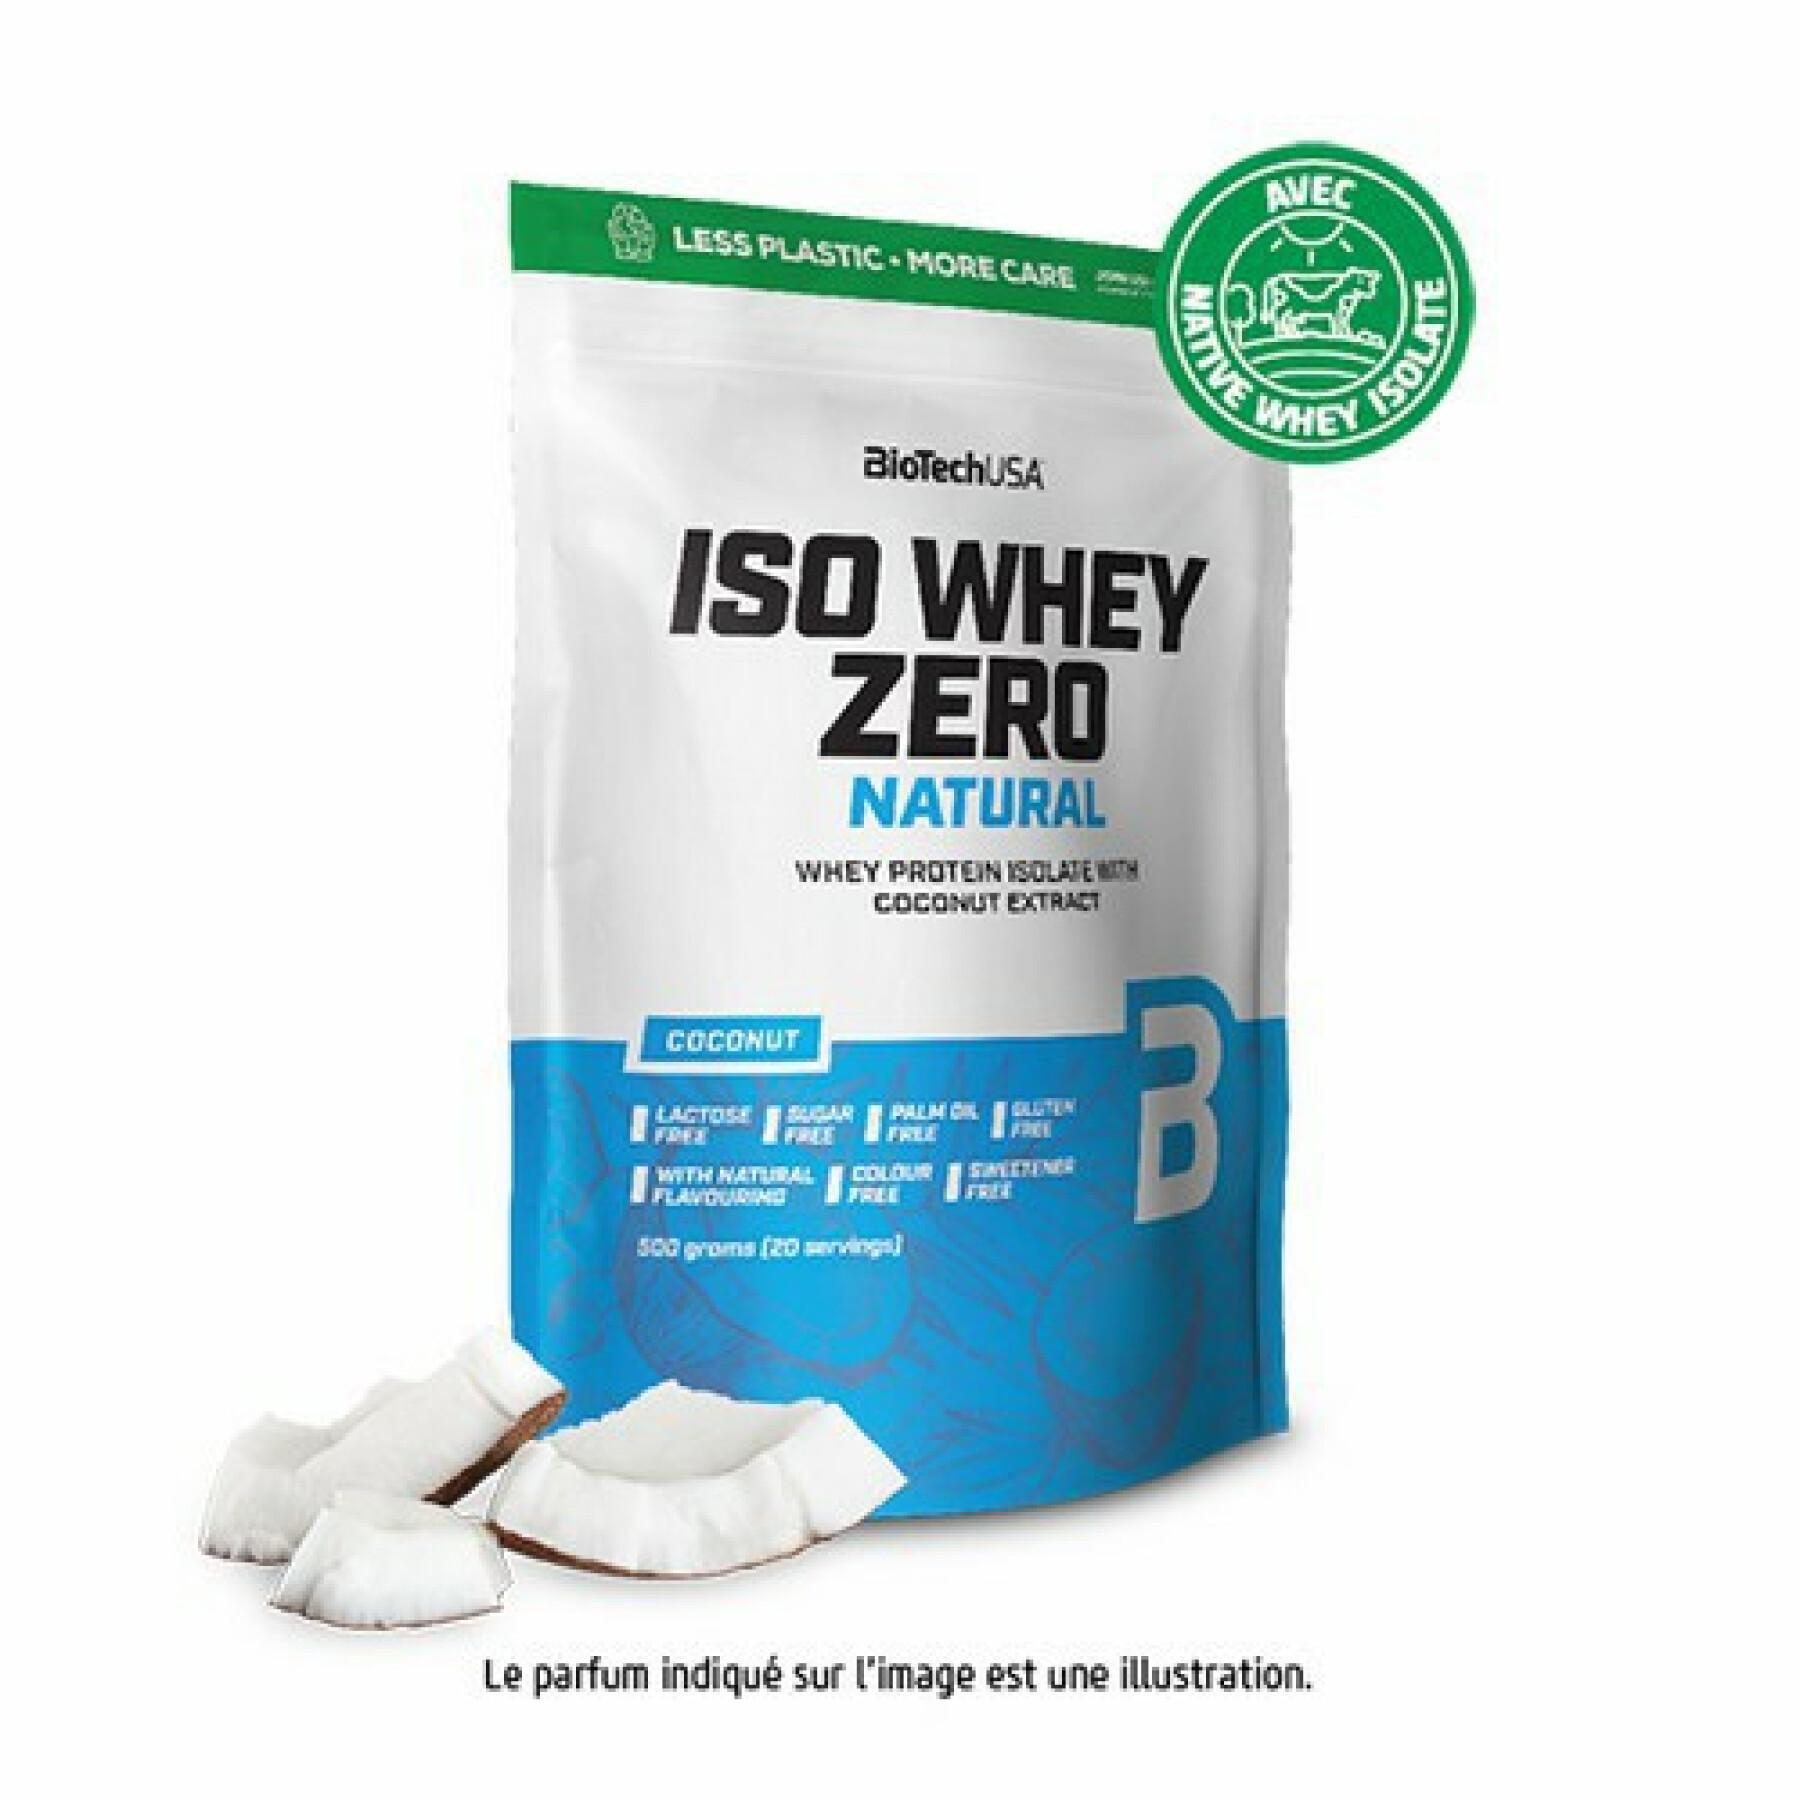 Lot de 10 sacs de protéines Biotech USA iso whey zero lactose free - Coco - 500g